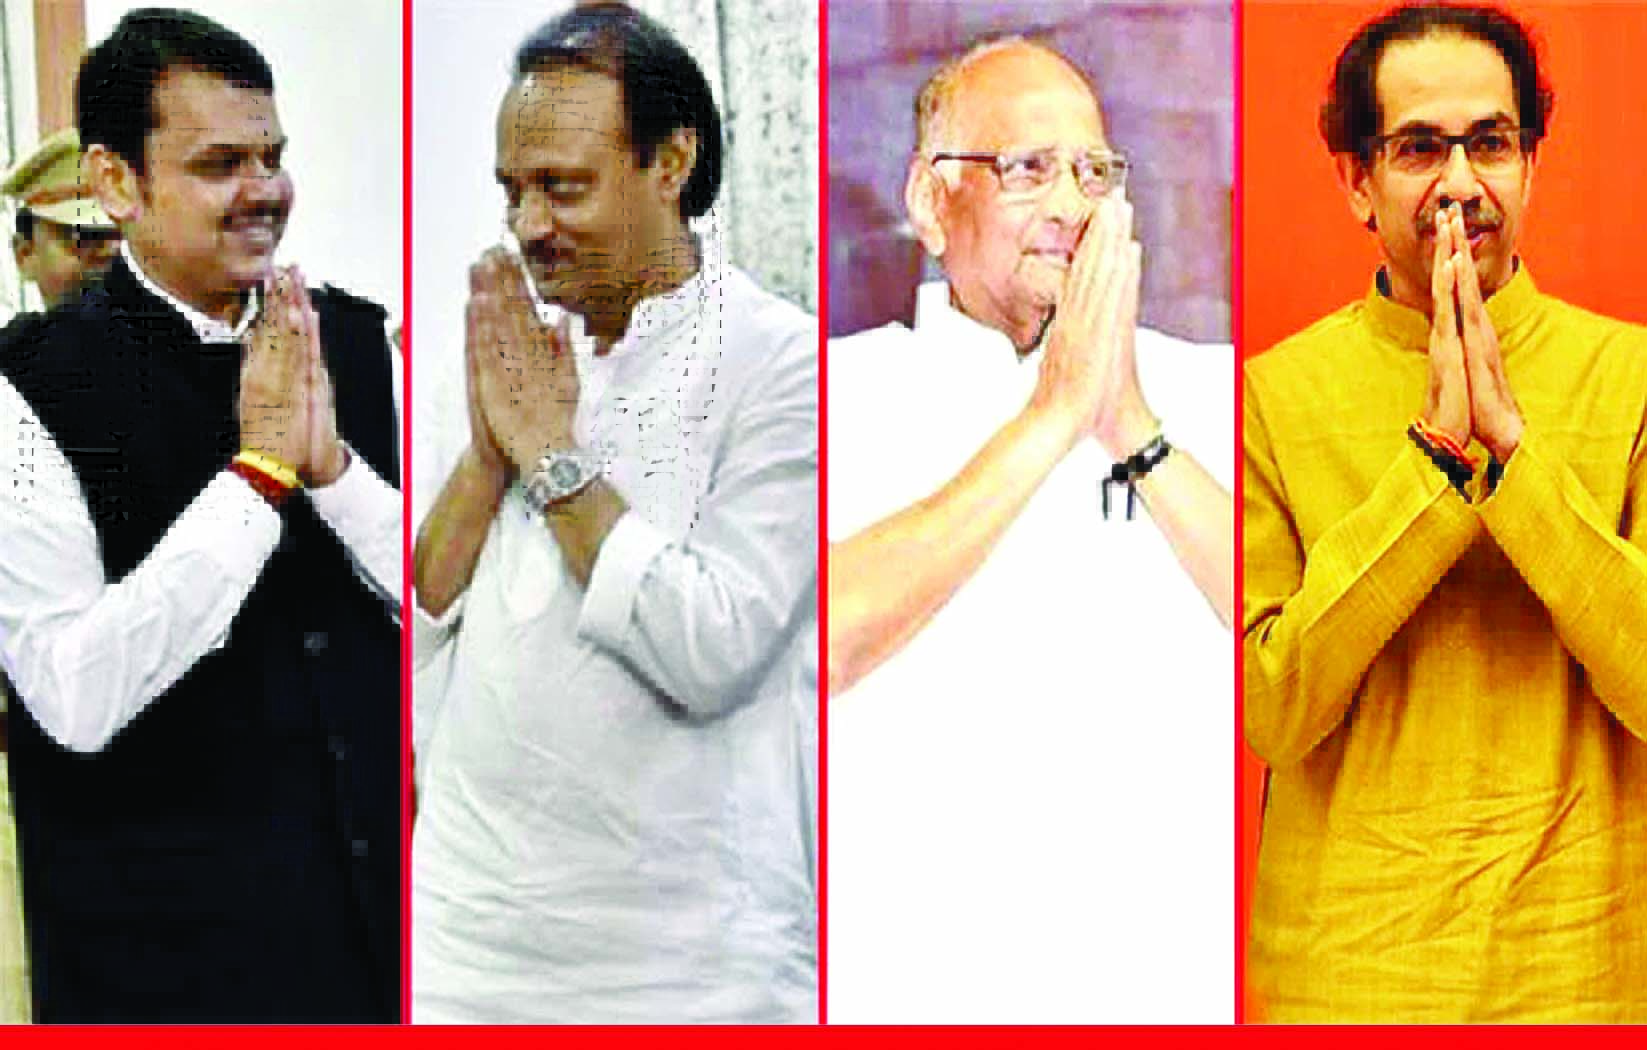 महाराष्ट्र में मचेगी भगदड़? 5 राज्यों का परिणाम देख भाजपा-आप की तरफ रुख कर सकते हैं नेता